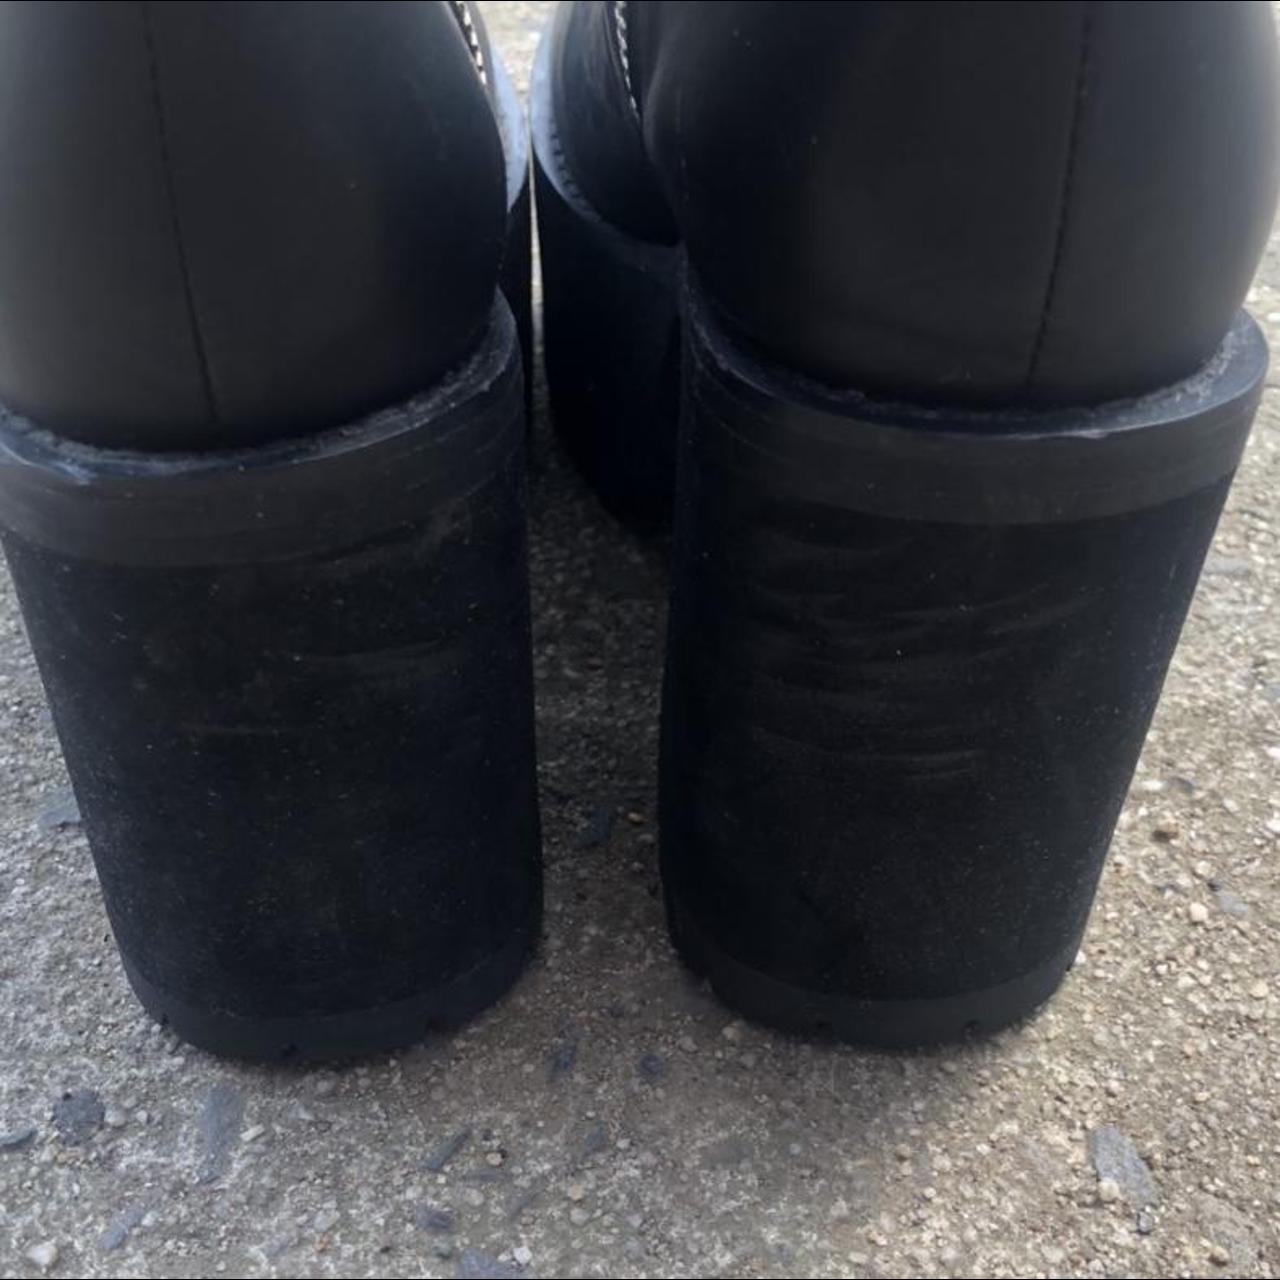 unif bonnie boots. us 7 women’s, eu 37, uk 5. the... - Depop